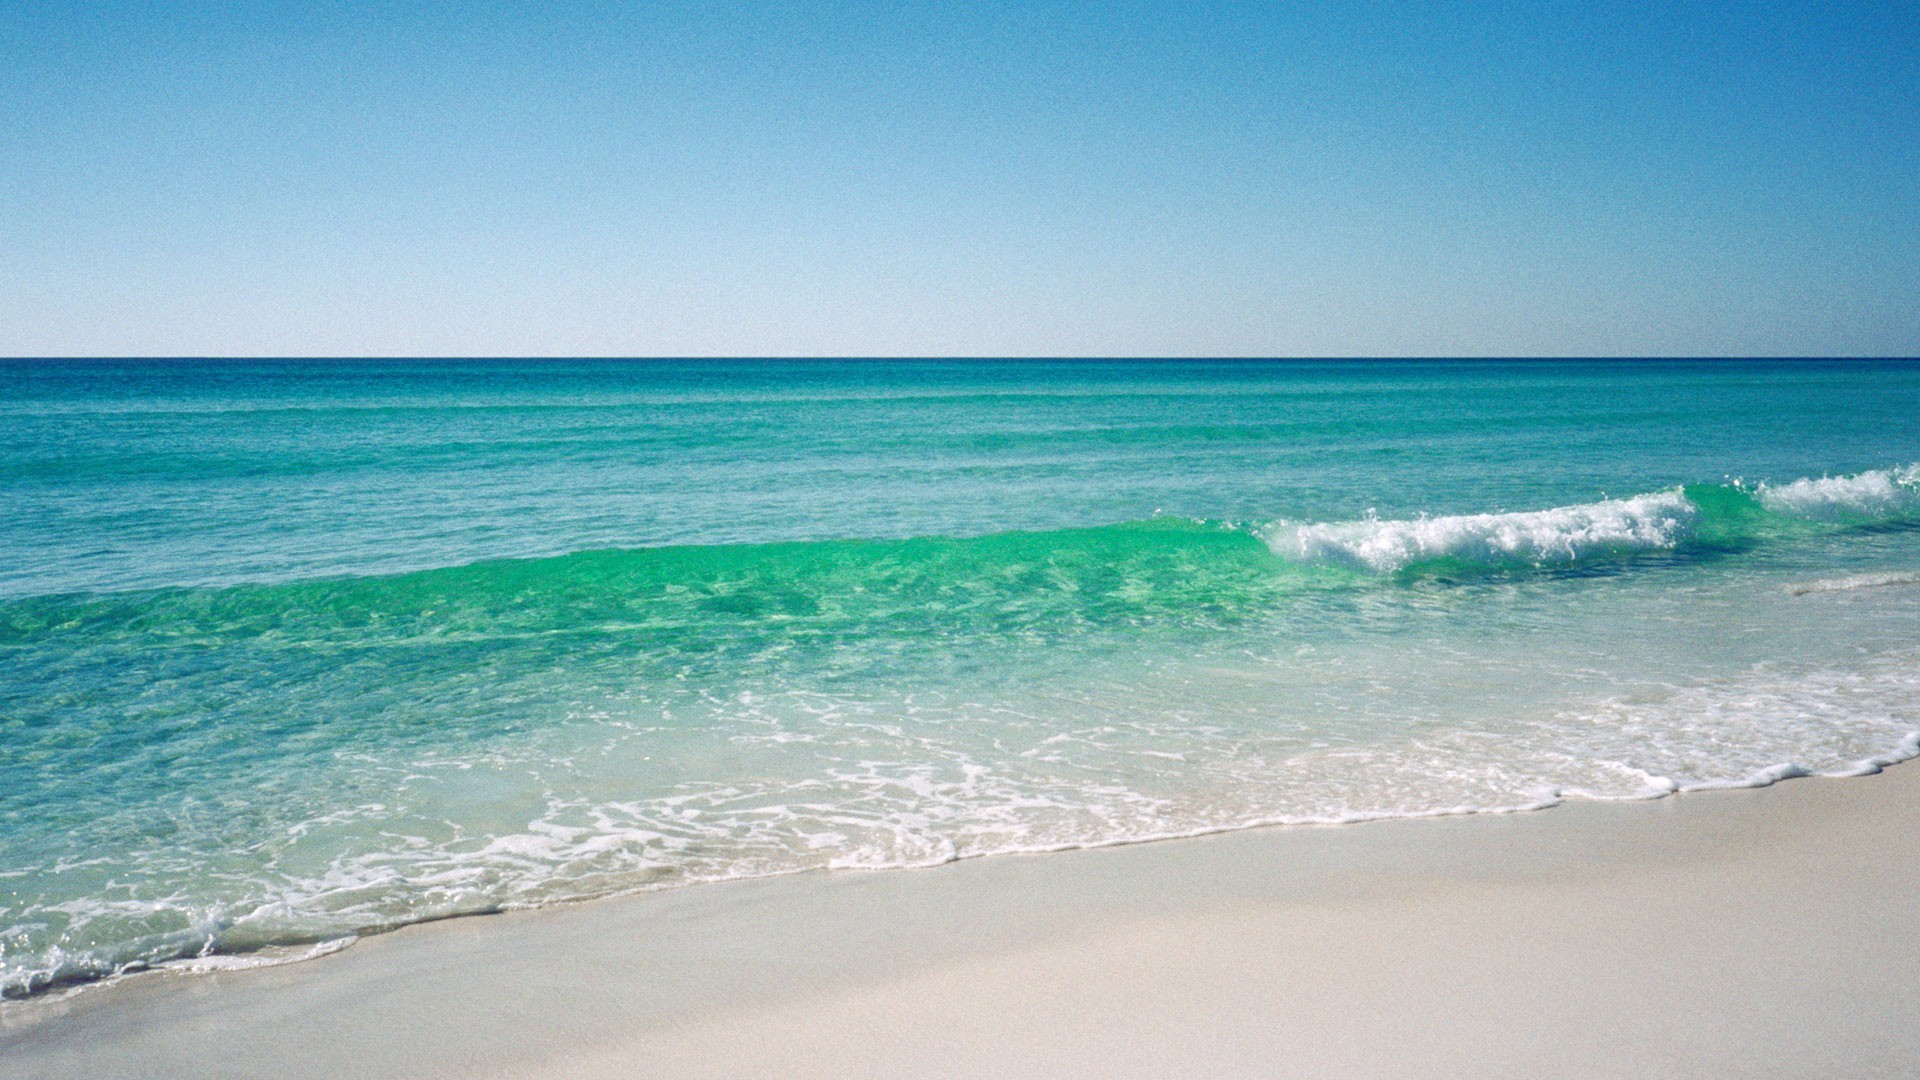 море и океан песок воды прибой пляж лето путешествия тропический море моря океан хорошую погоду солнце небо пейзаж бирюза релаксация природа горячая